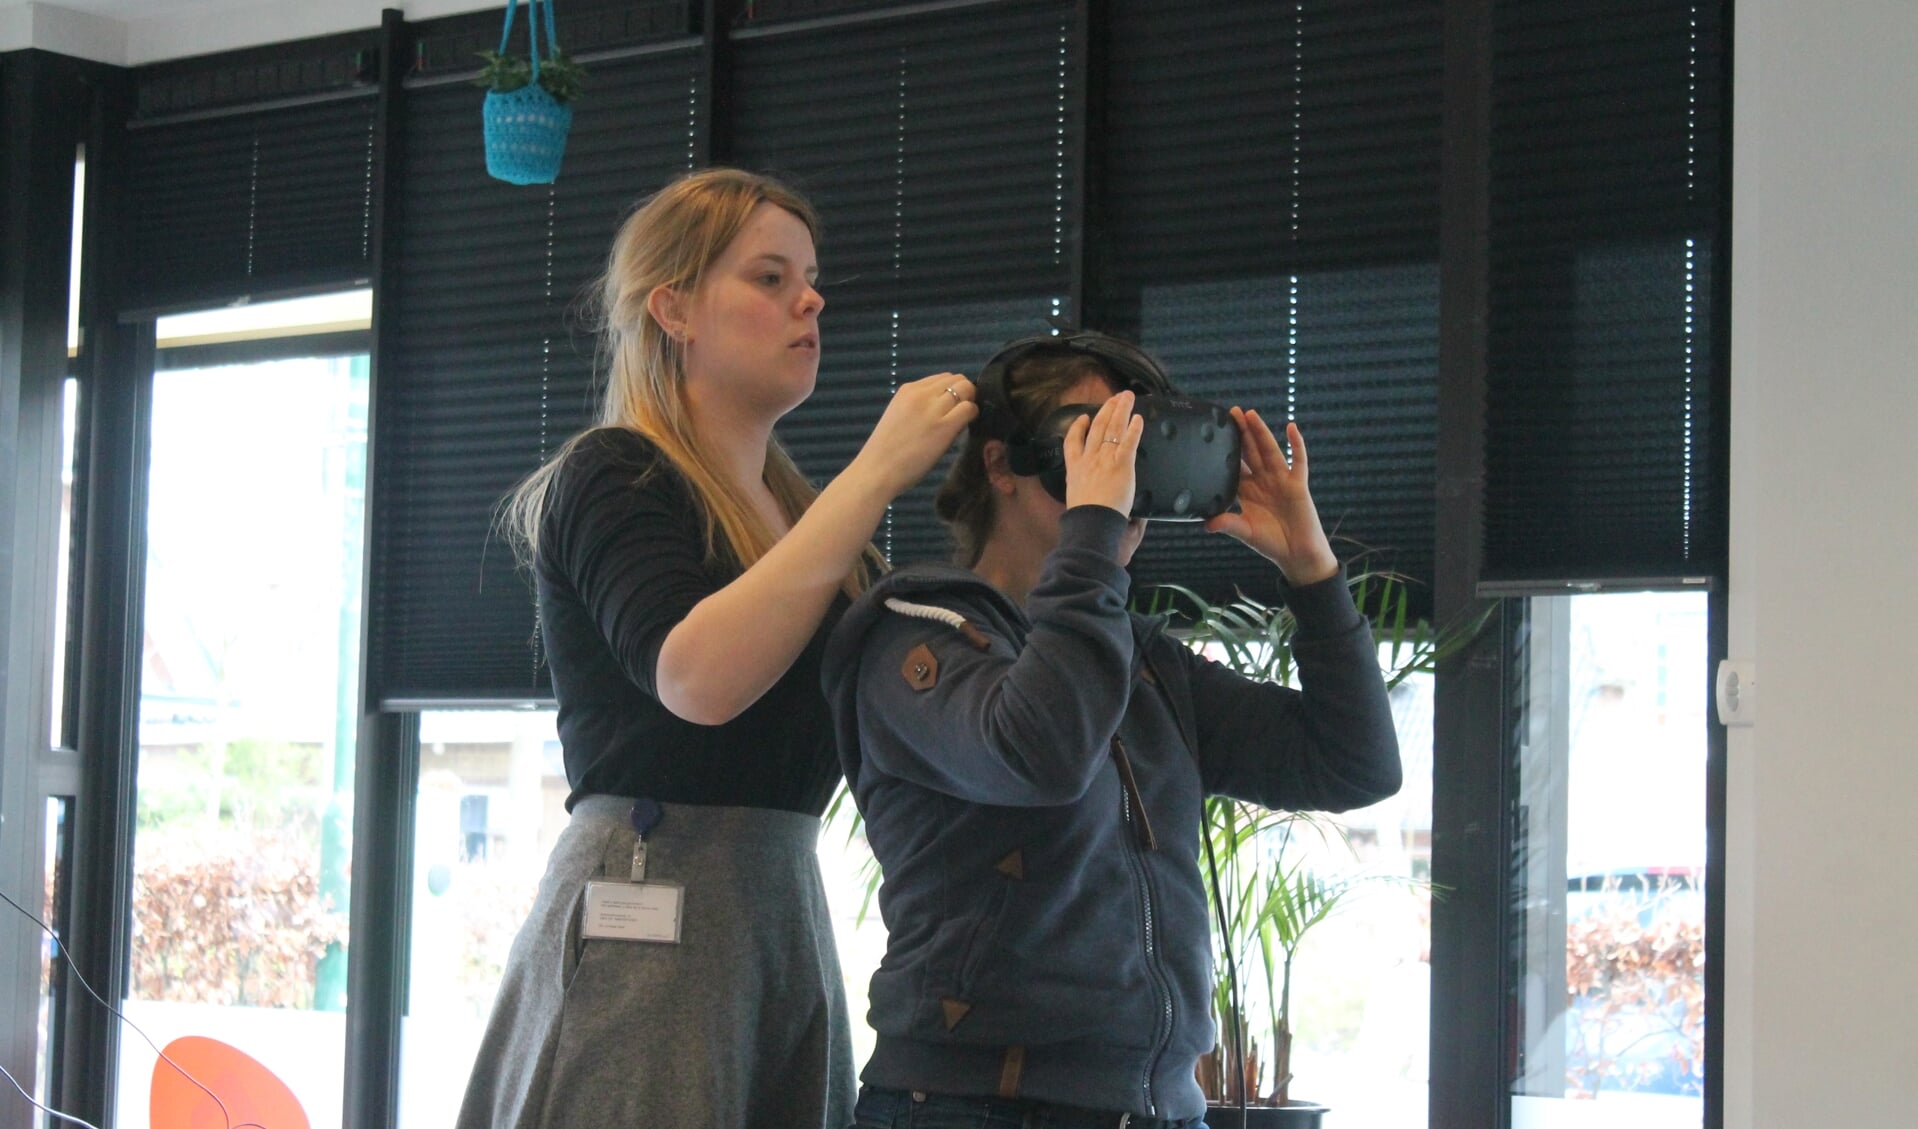 Marleen helpt Indra om de VR bril op te zetten